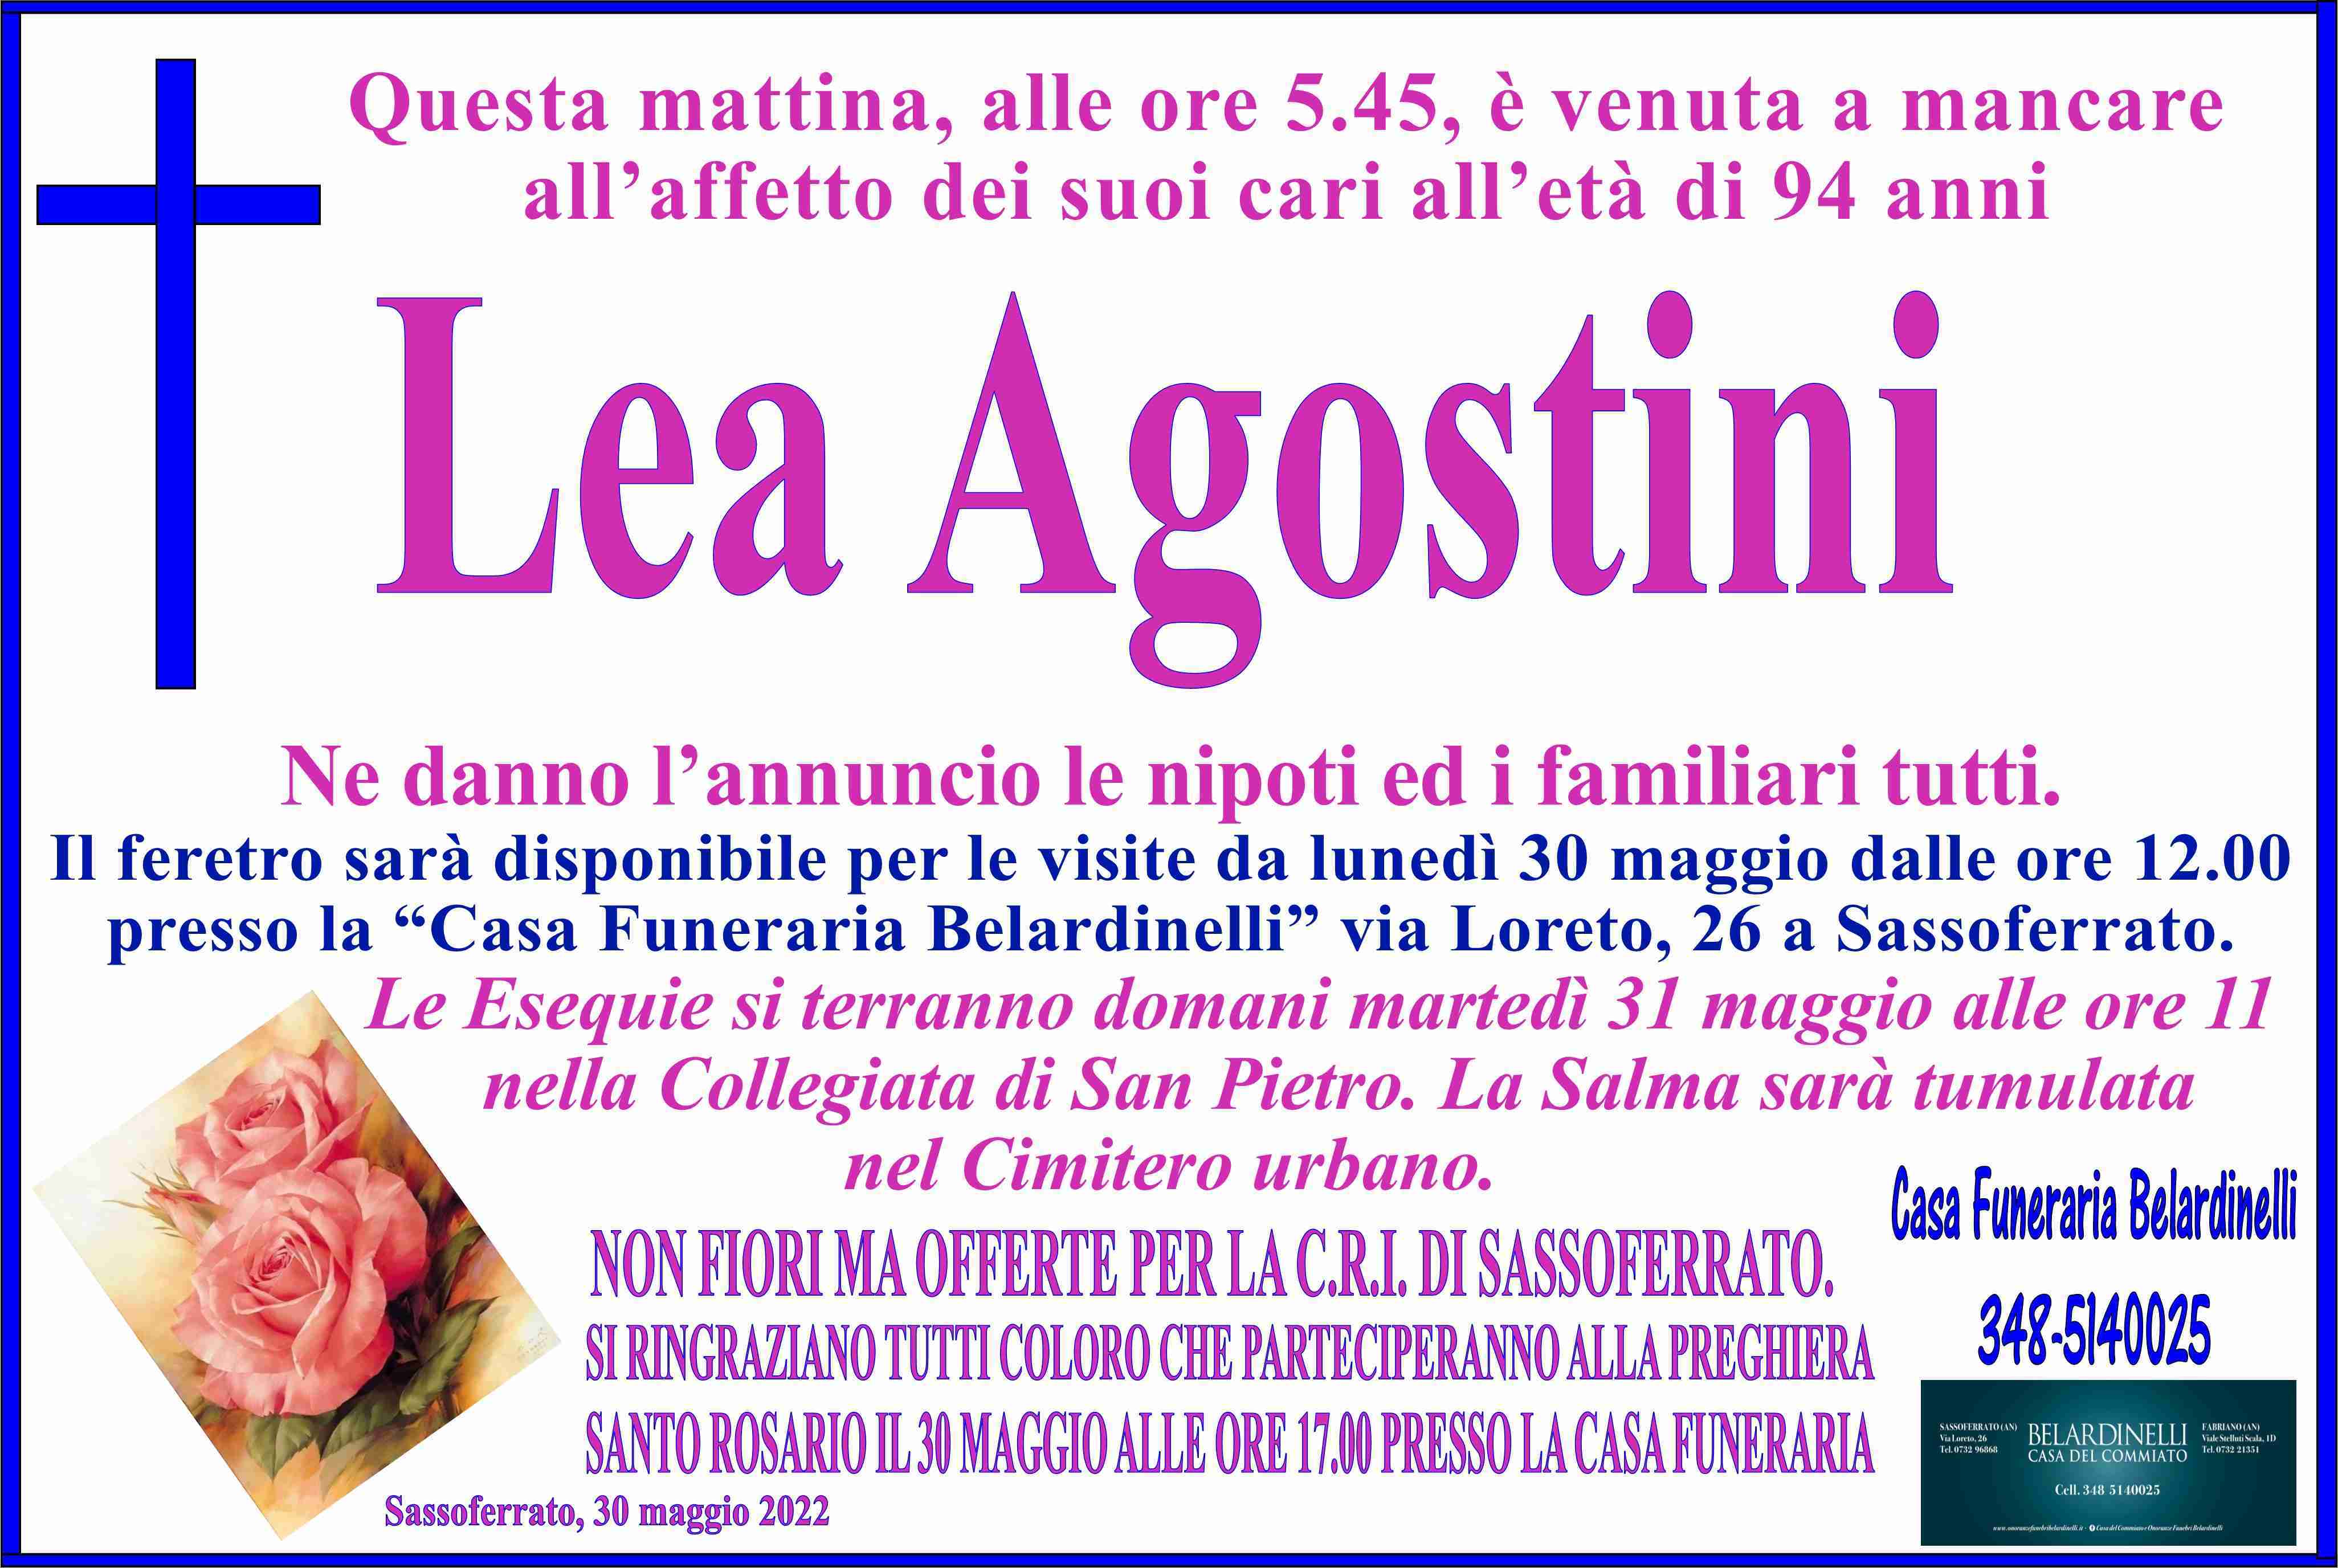 Lea Agostini